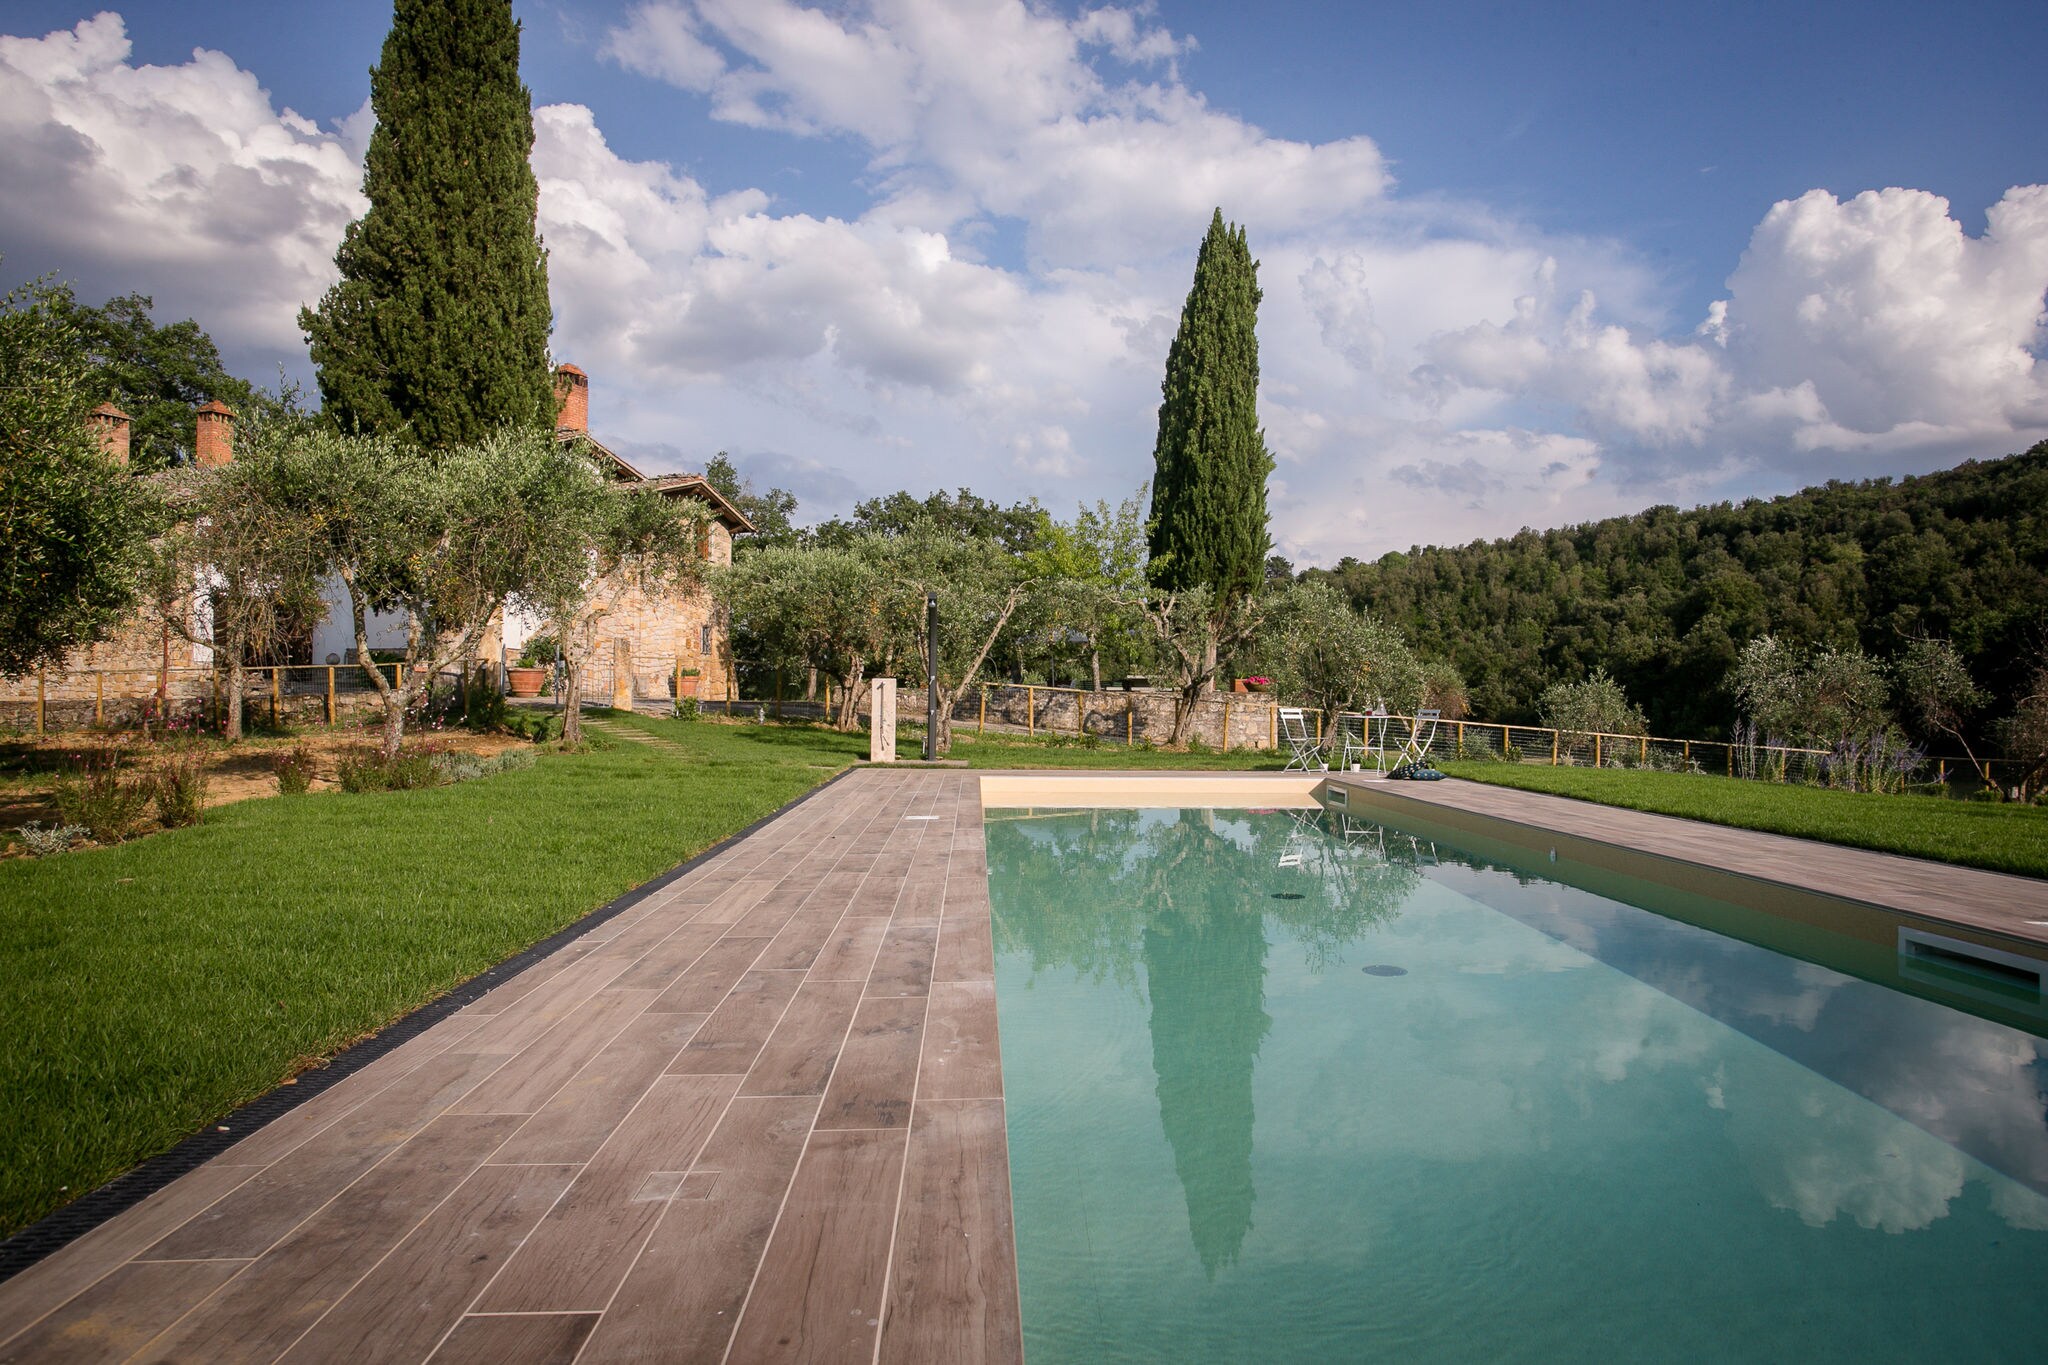 Villa with private pool in the beautiful Crete Senesi area